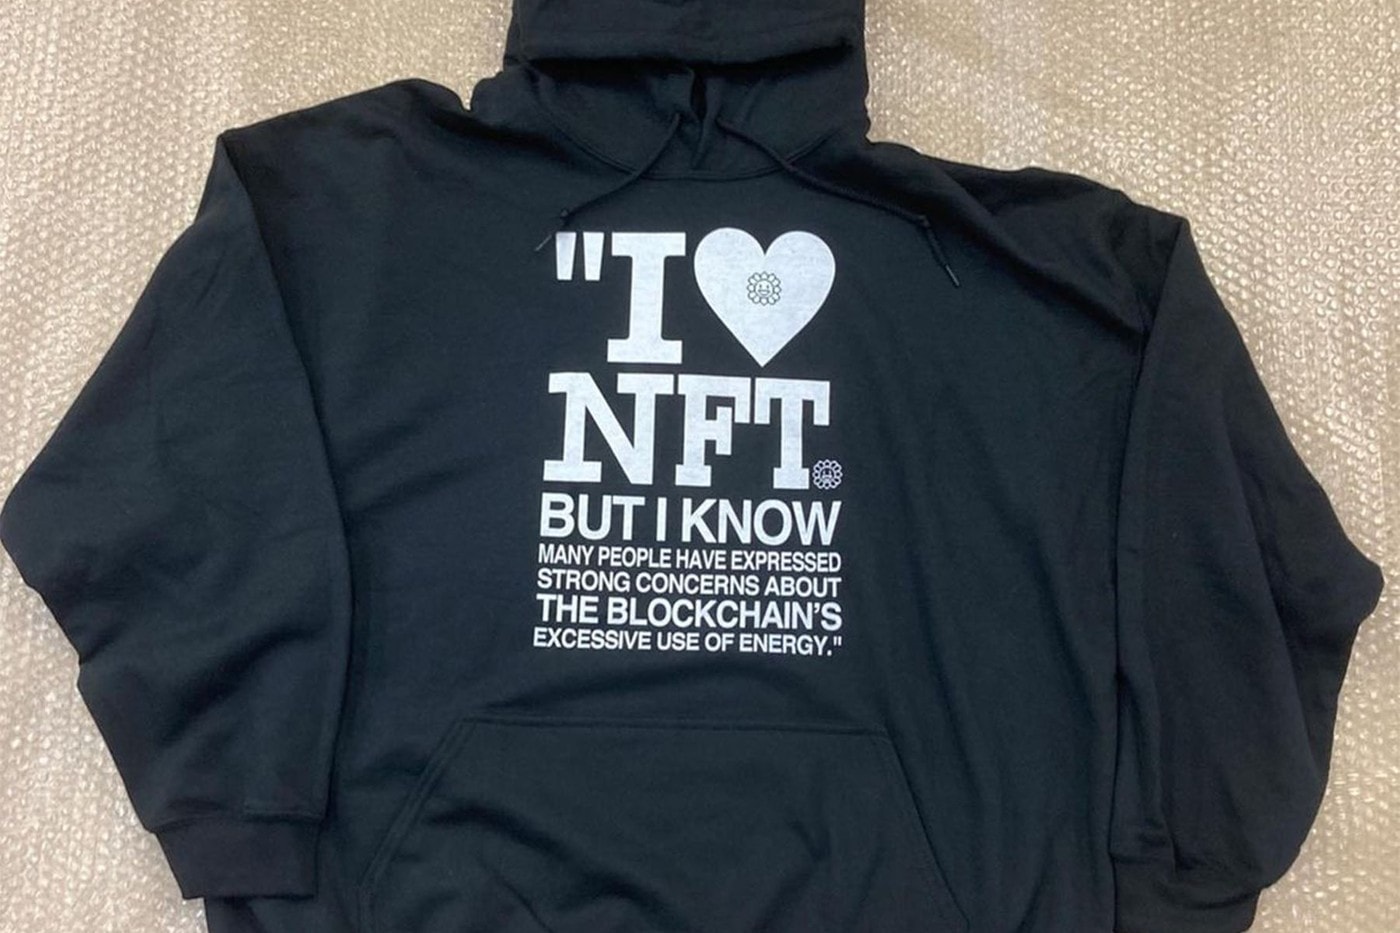 村上隆发布「I Love NFT」服装单品回应大众怀疑态度